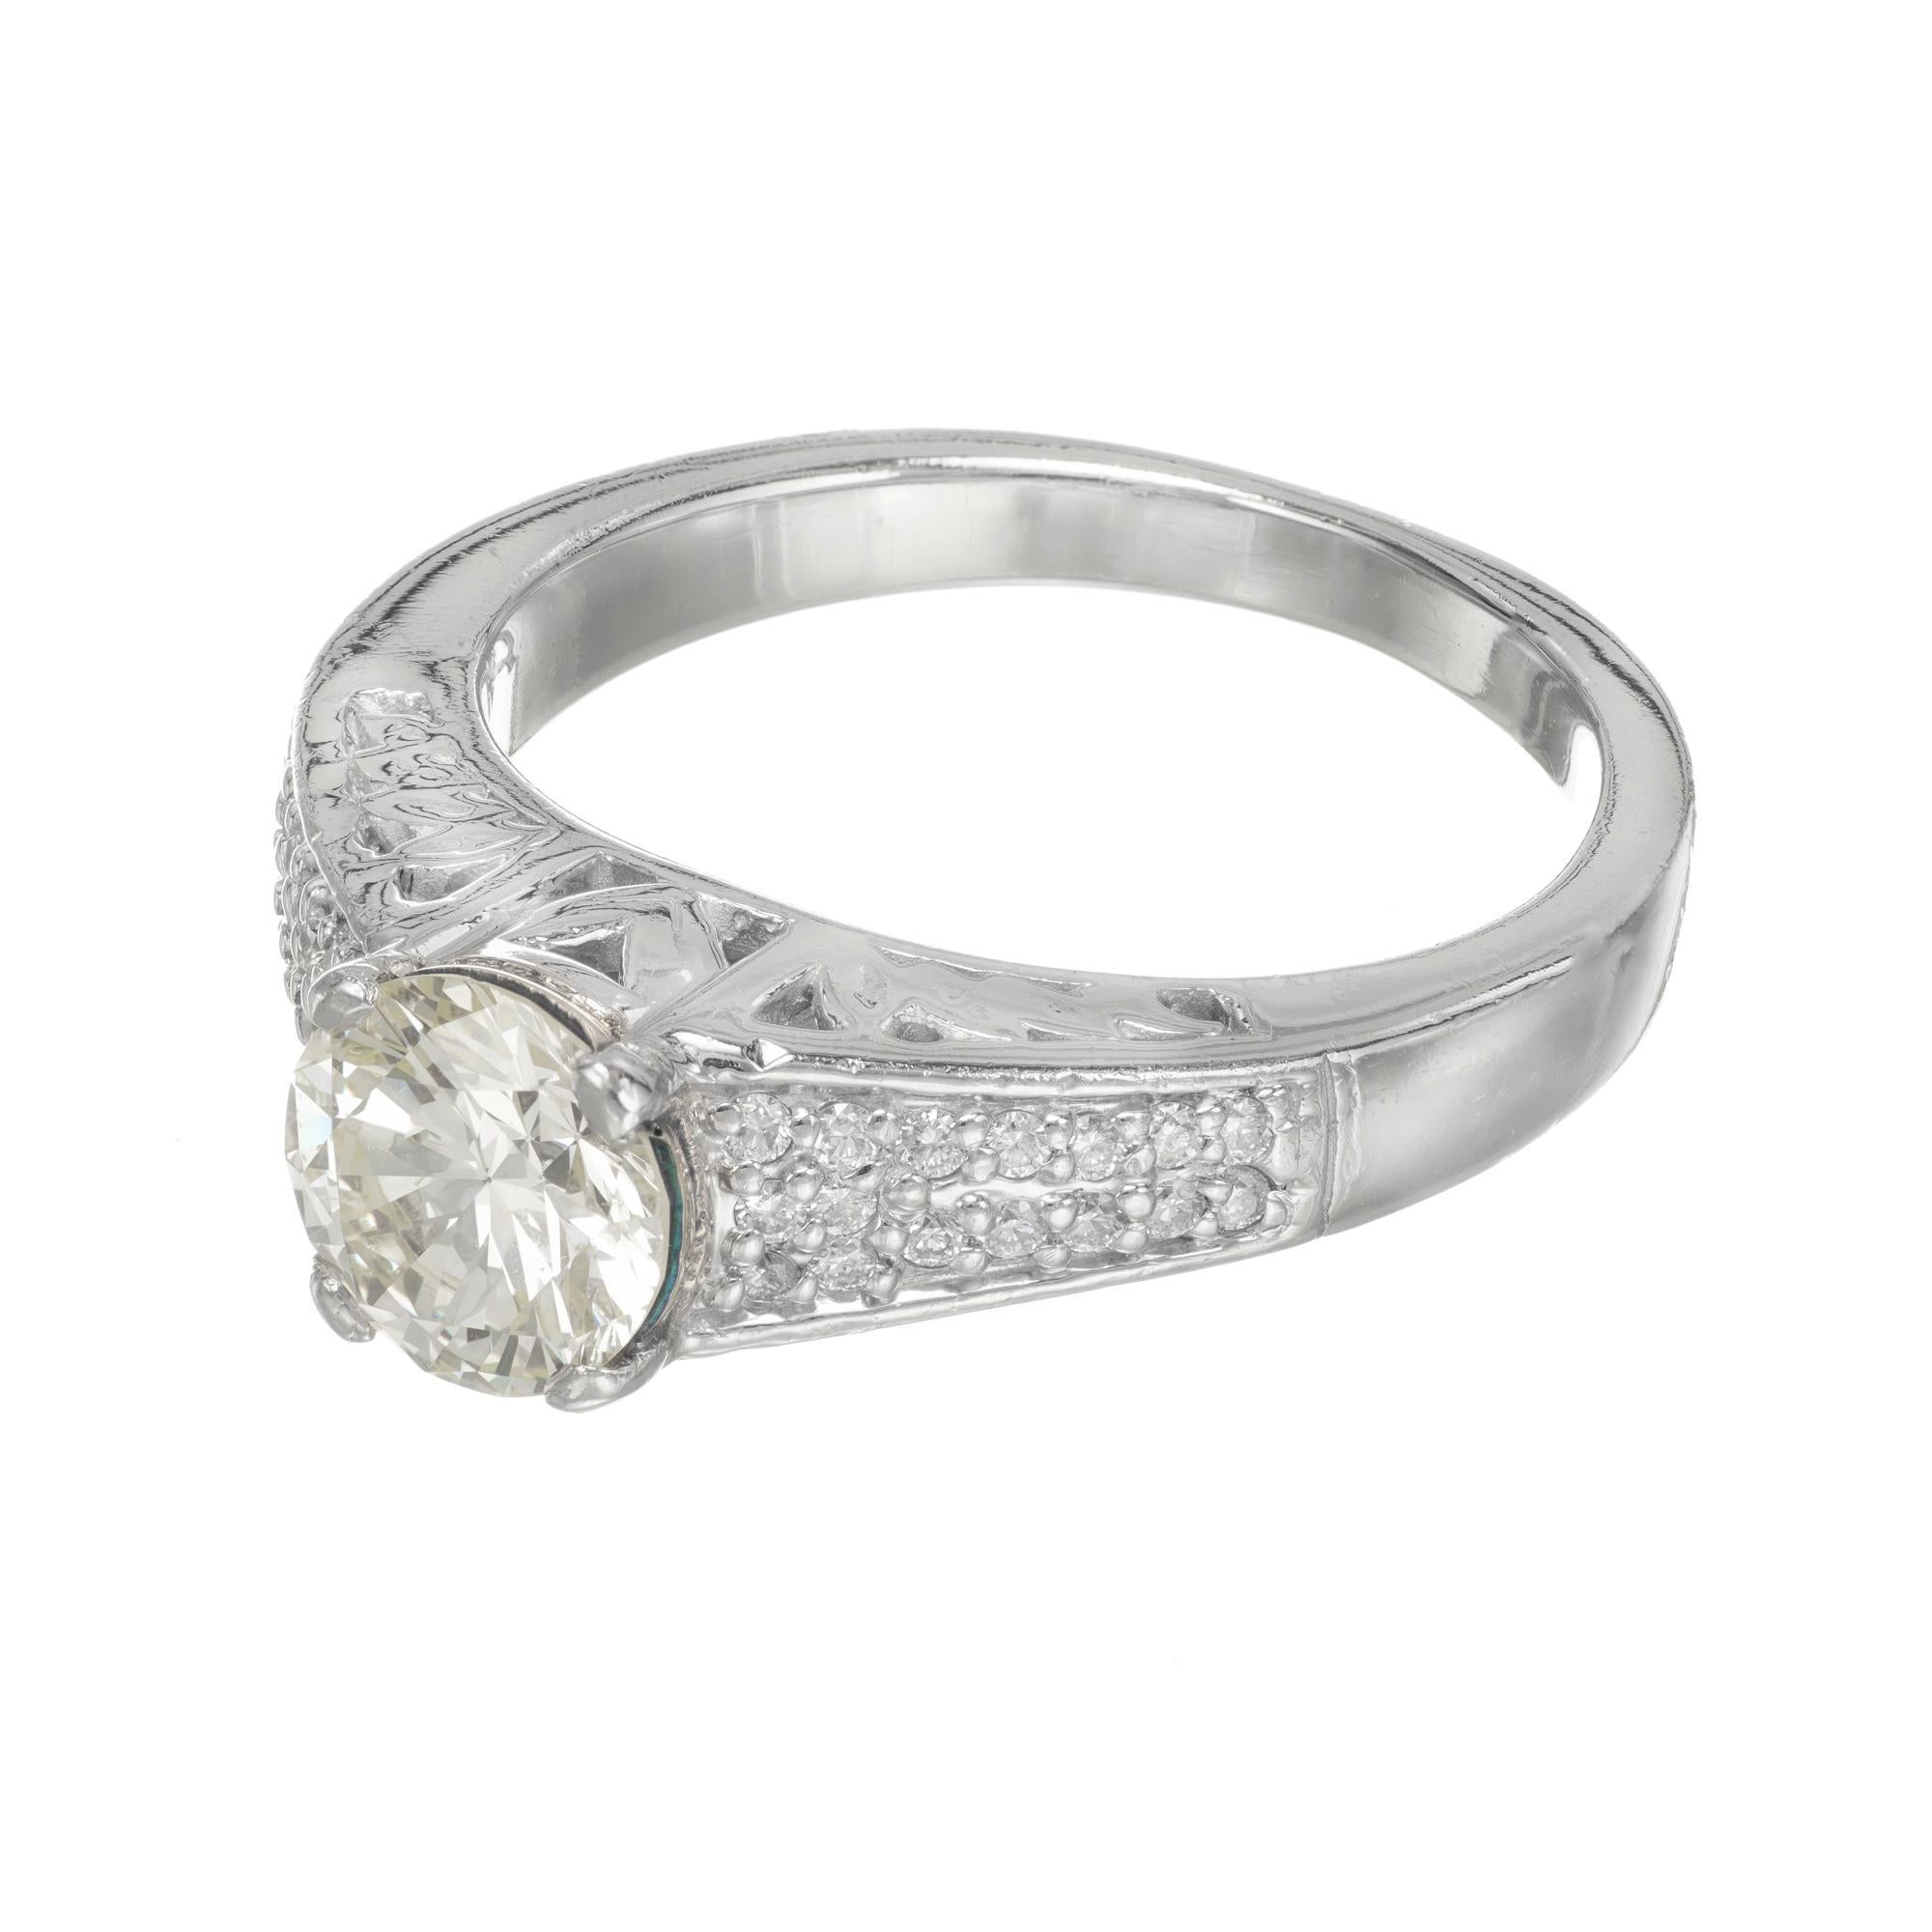 50 carat diamond ring price